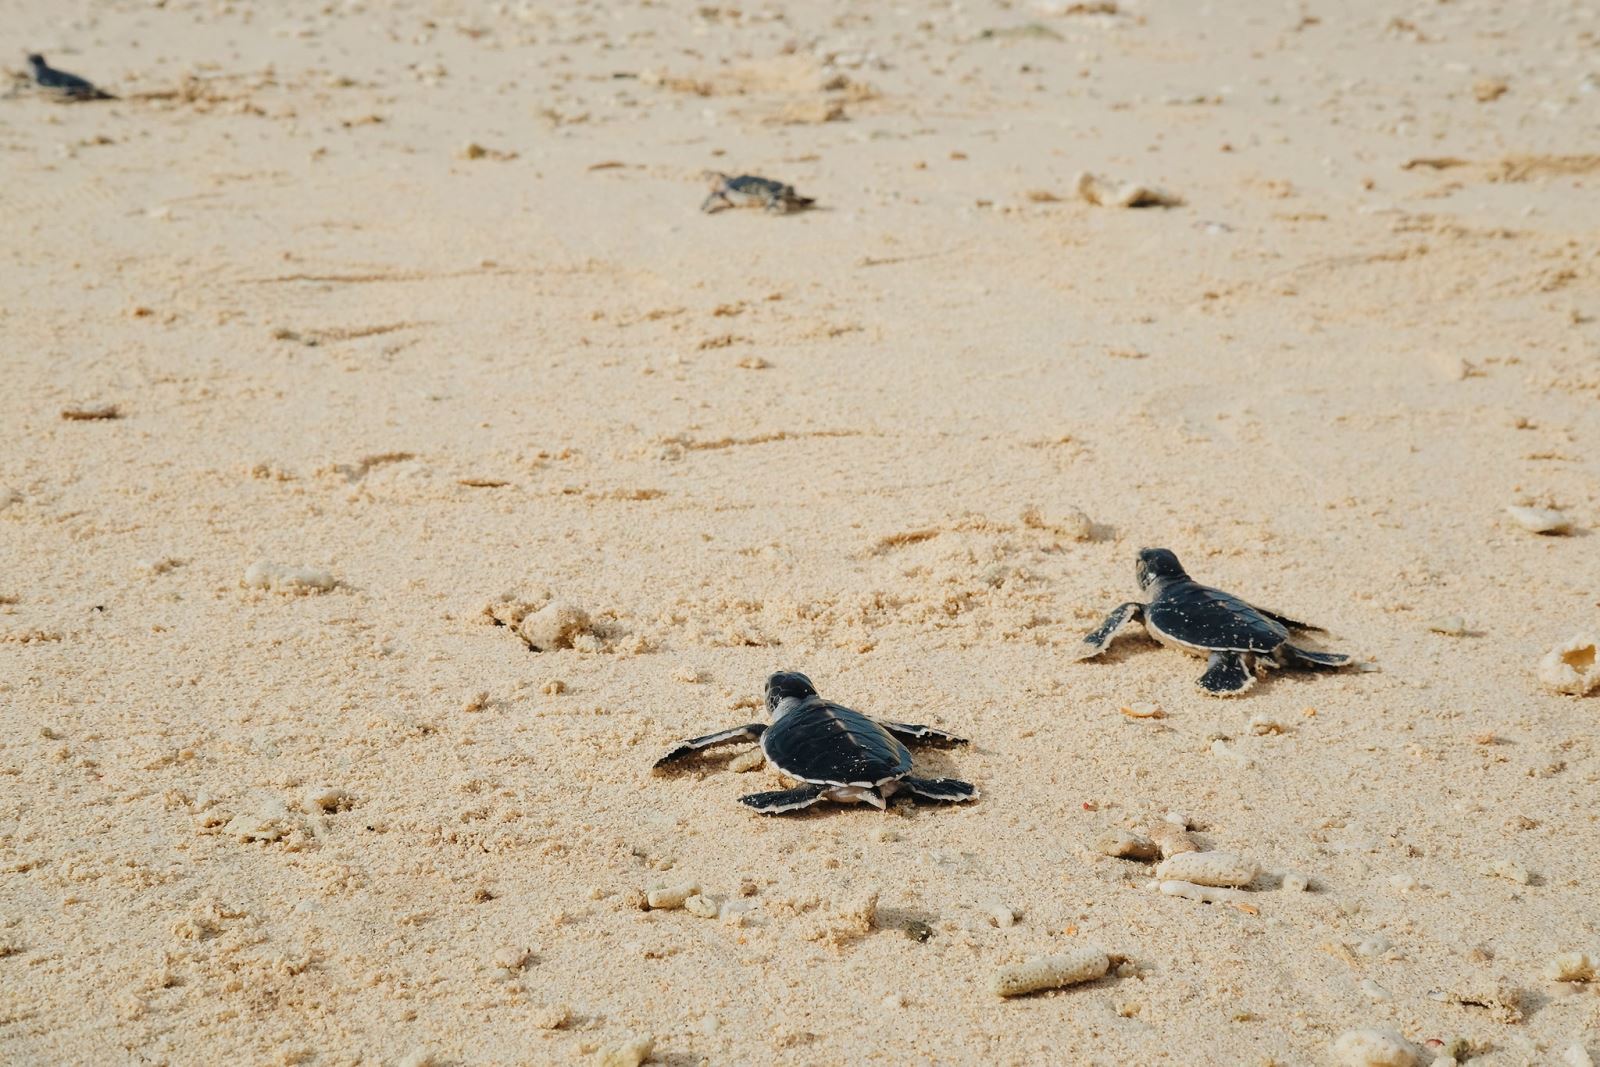 Rùa ở Côn Đảo thuộc loại Rùa Xanh (hay còn gọi là Vích), 1 trong 7 loại rùa biển, là loài rùa quý hiếm nằm trong Sách Đỏ